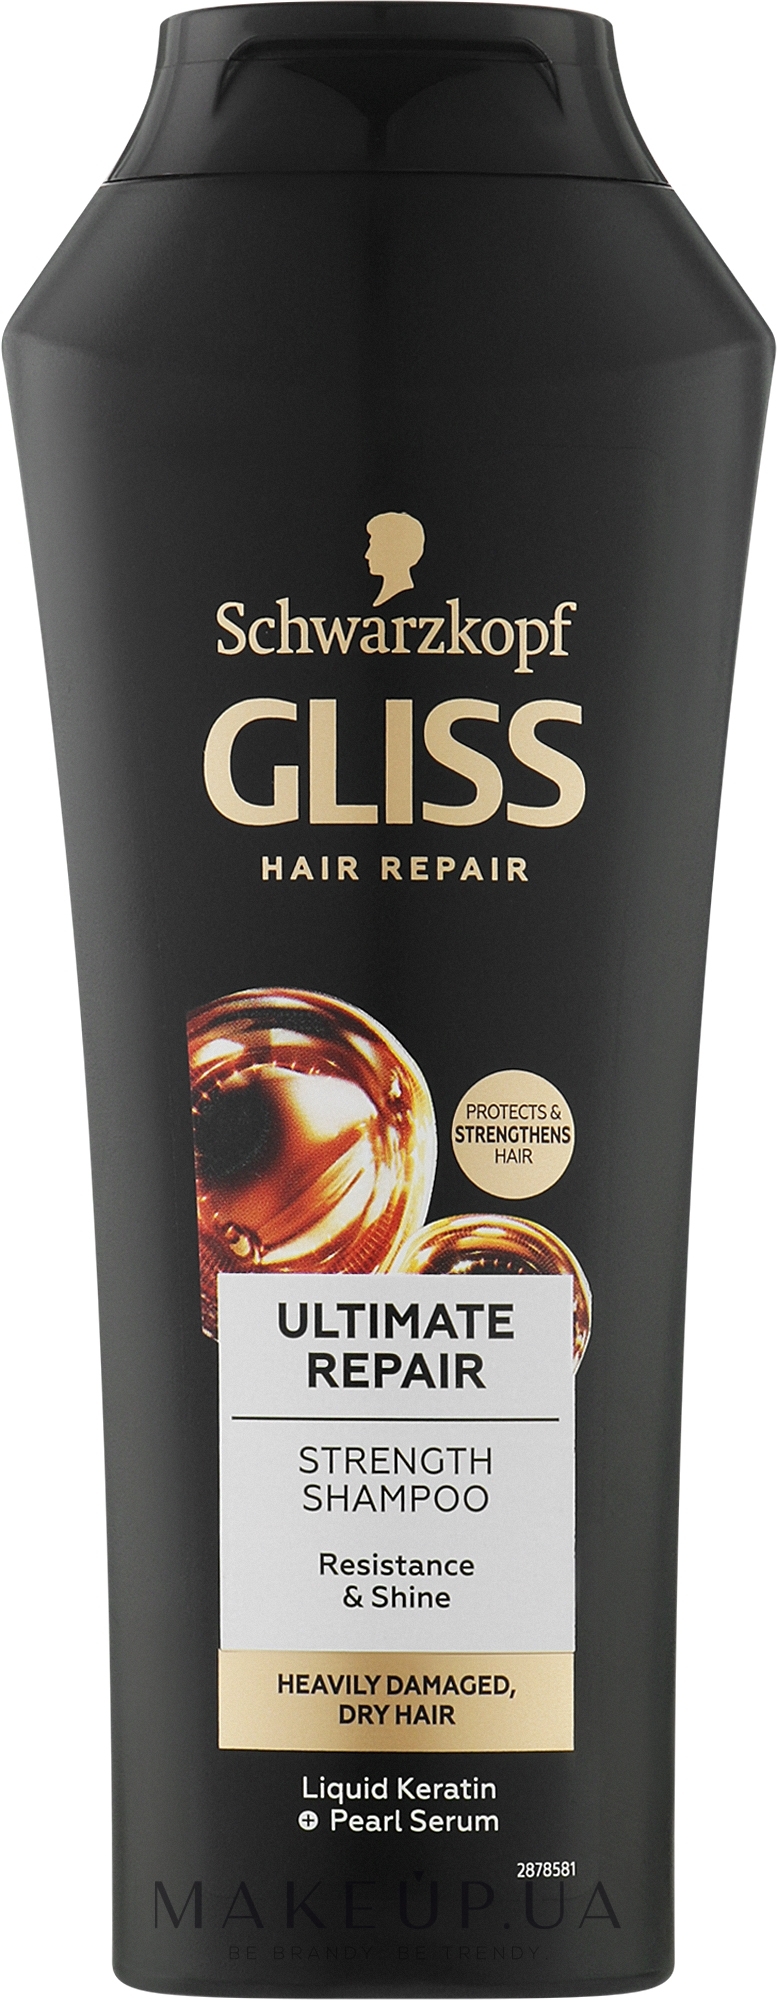 Шампунь "Экстремальный oil эликсир" - Gliss Kur Ultimate Oil Elixir Shampoo — фото 250ml